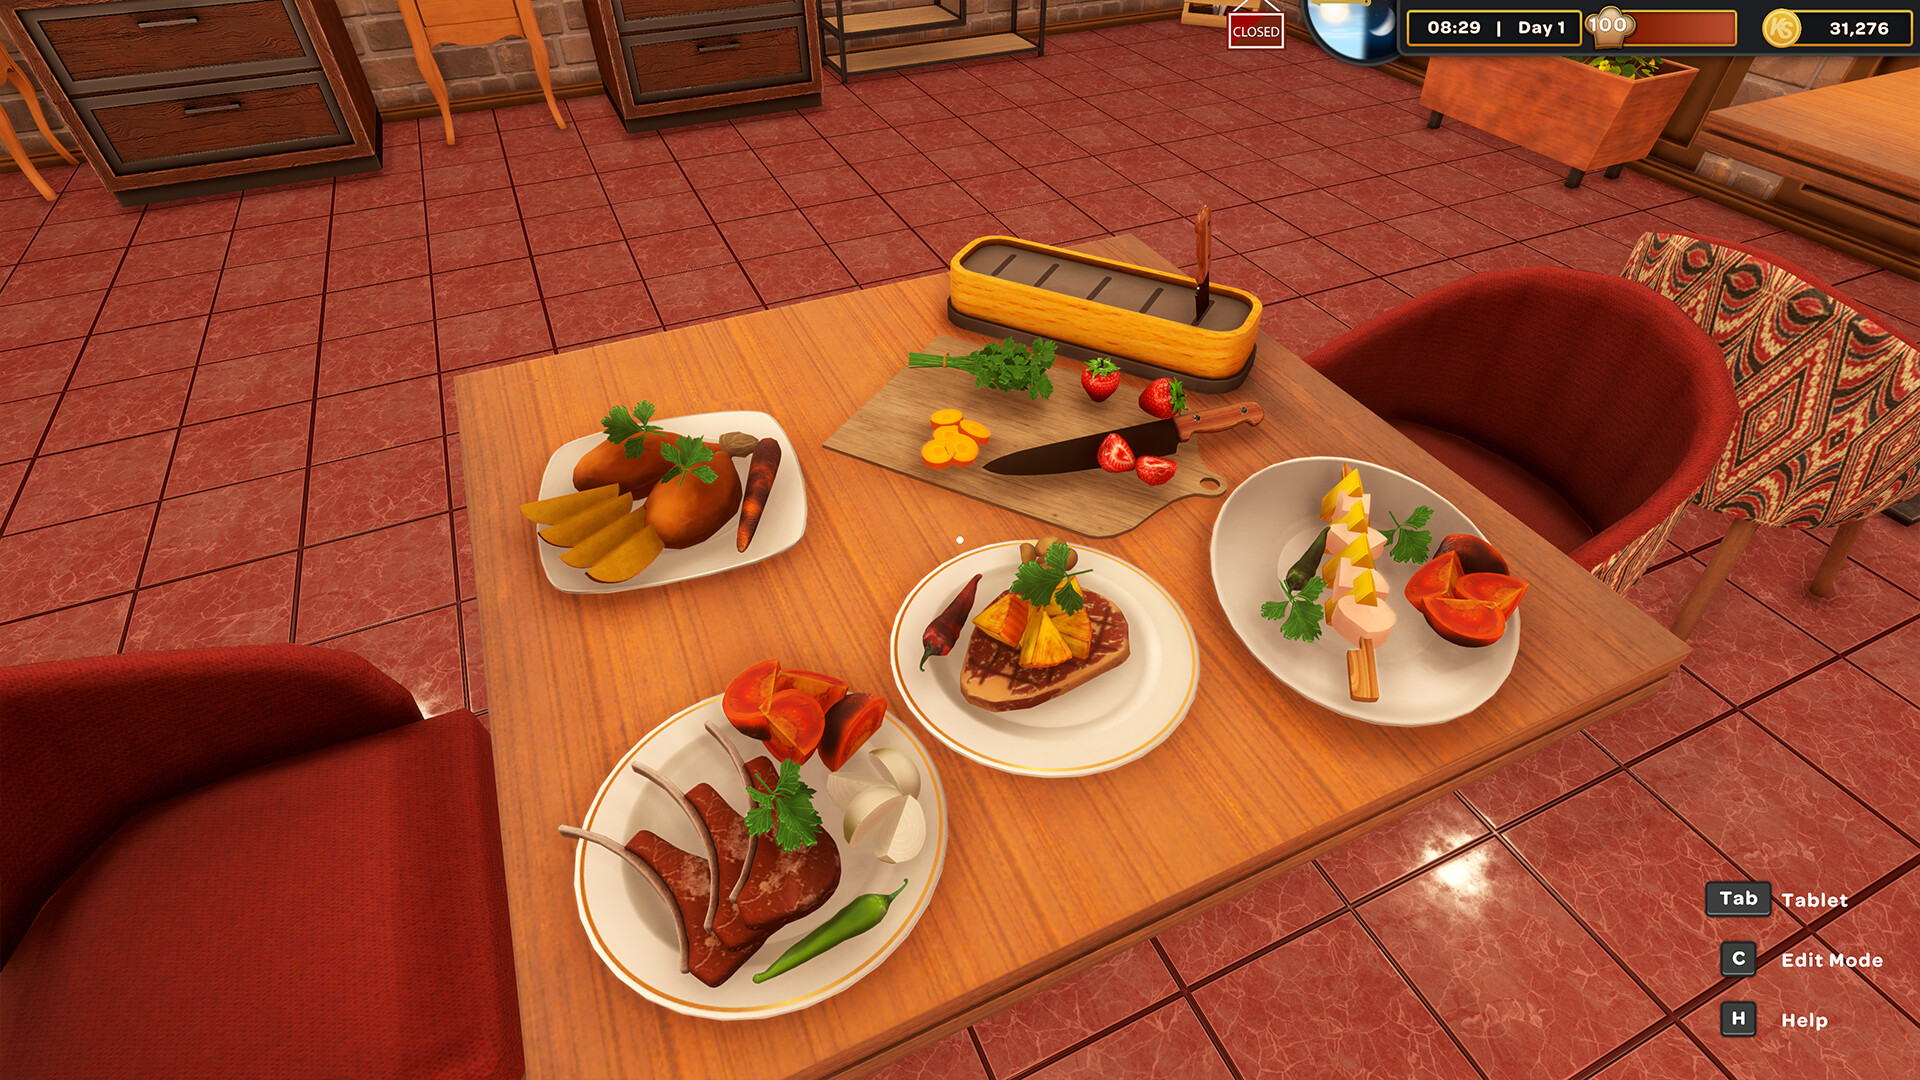 Kebab Chefs! - Restaurant Simulator Steam Altergift